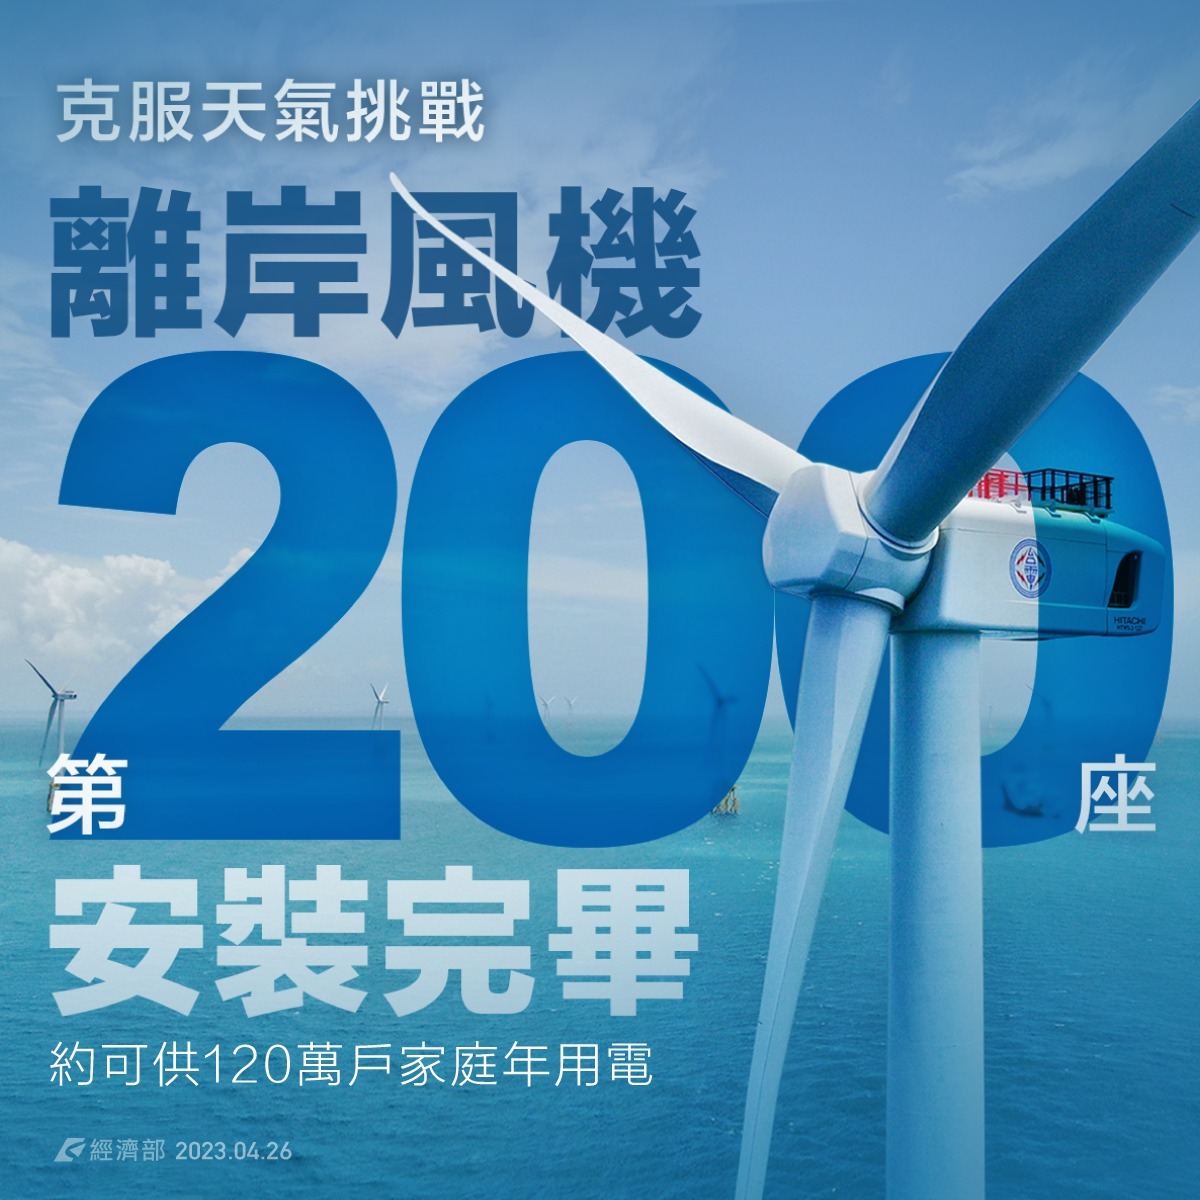 風電里程碑！ 經濟部宣布完成200支離岸風機安裝